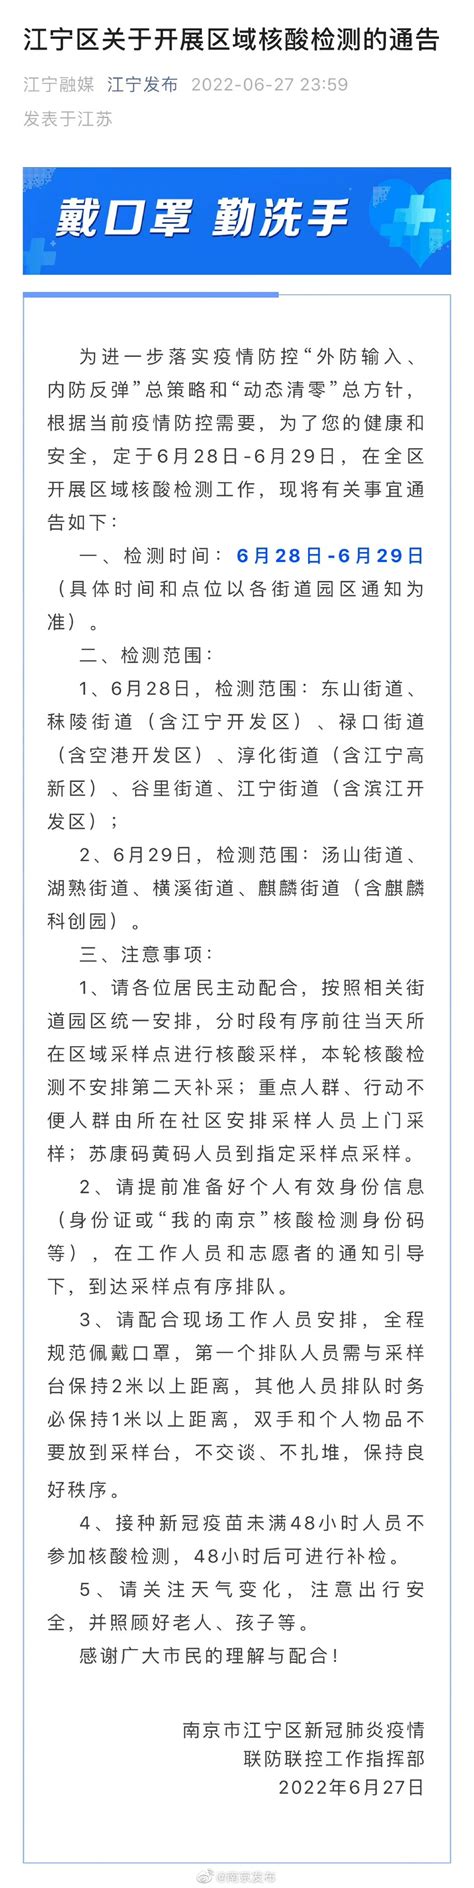 南京浦口区、雨花街道、江宁区关于开展核酸检测的通告